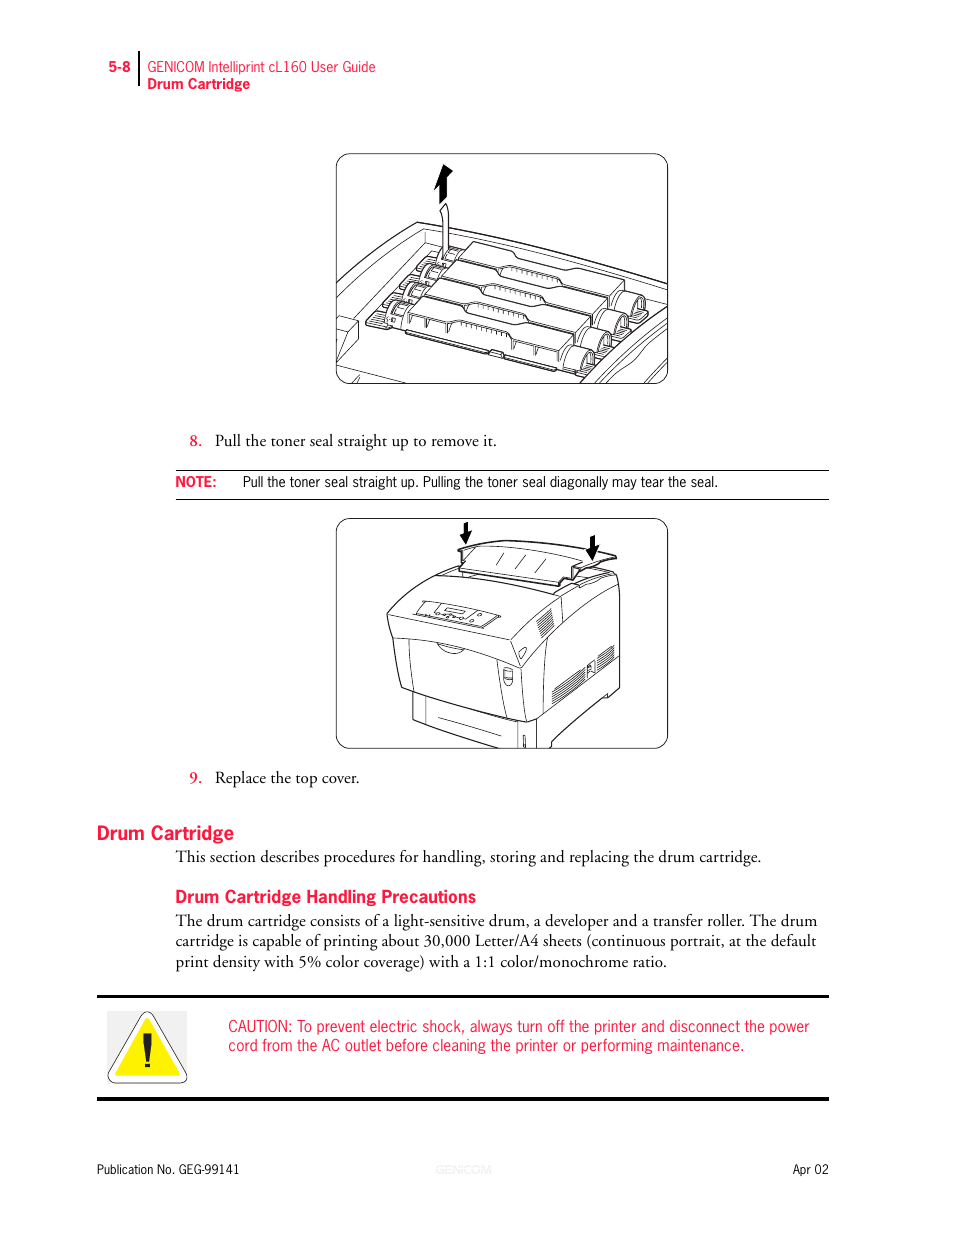 Drum cartridge, Drum cartridge 5-8, Drum cartridge handling precautions 5-8 | Genicom cL160 User Manual | Page 120 / 216